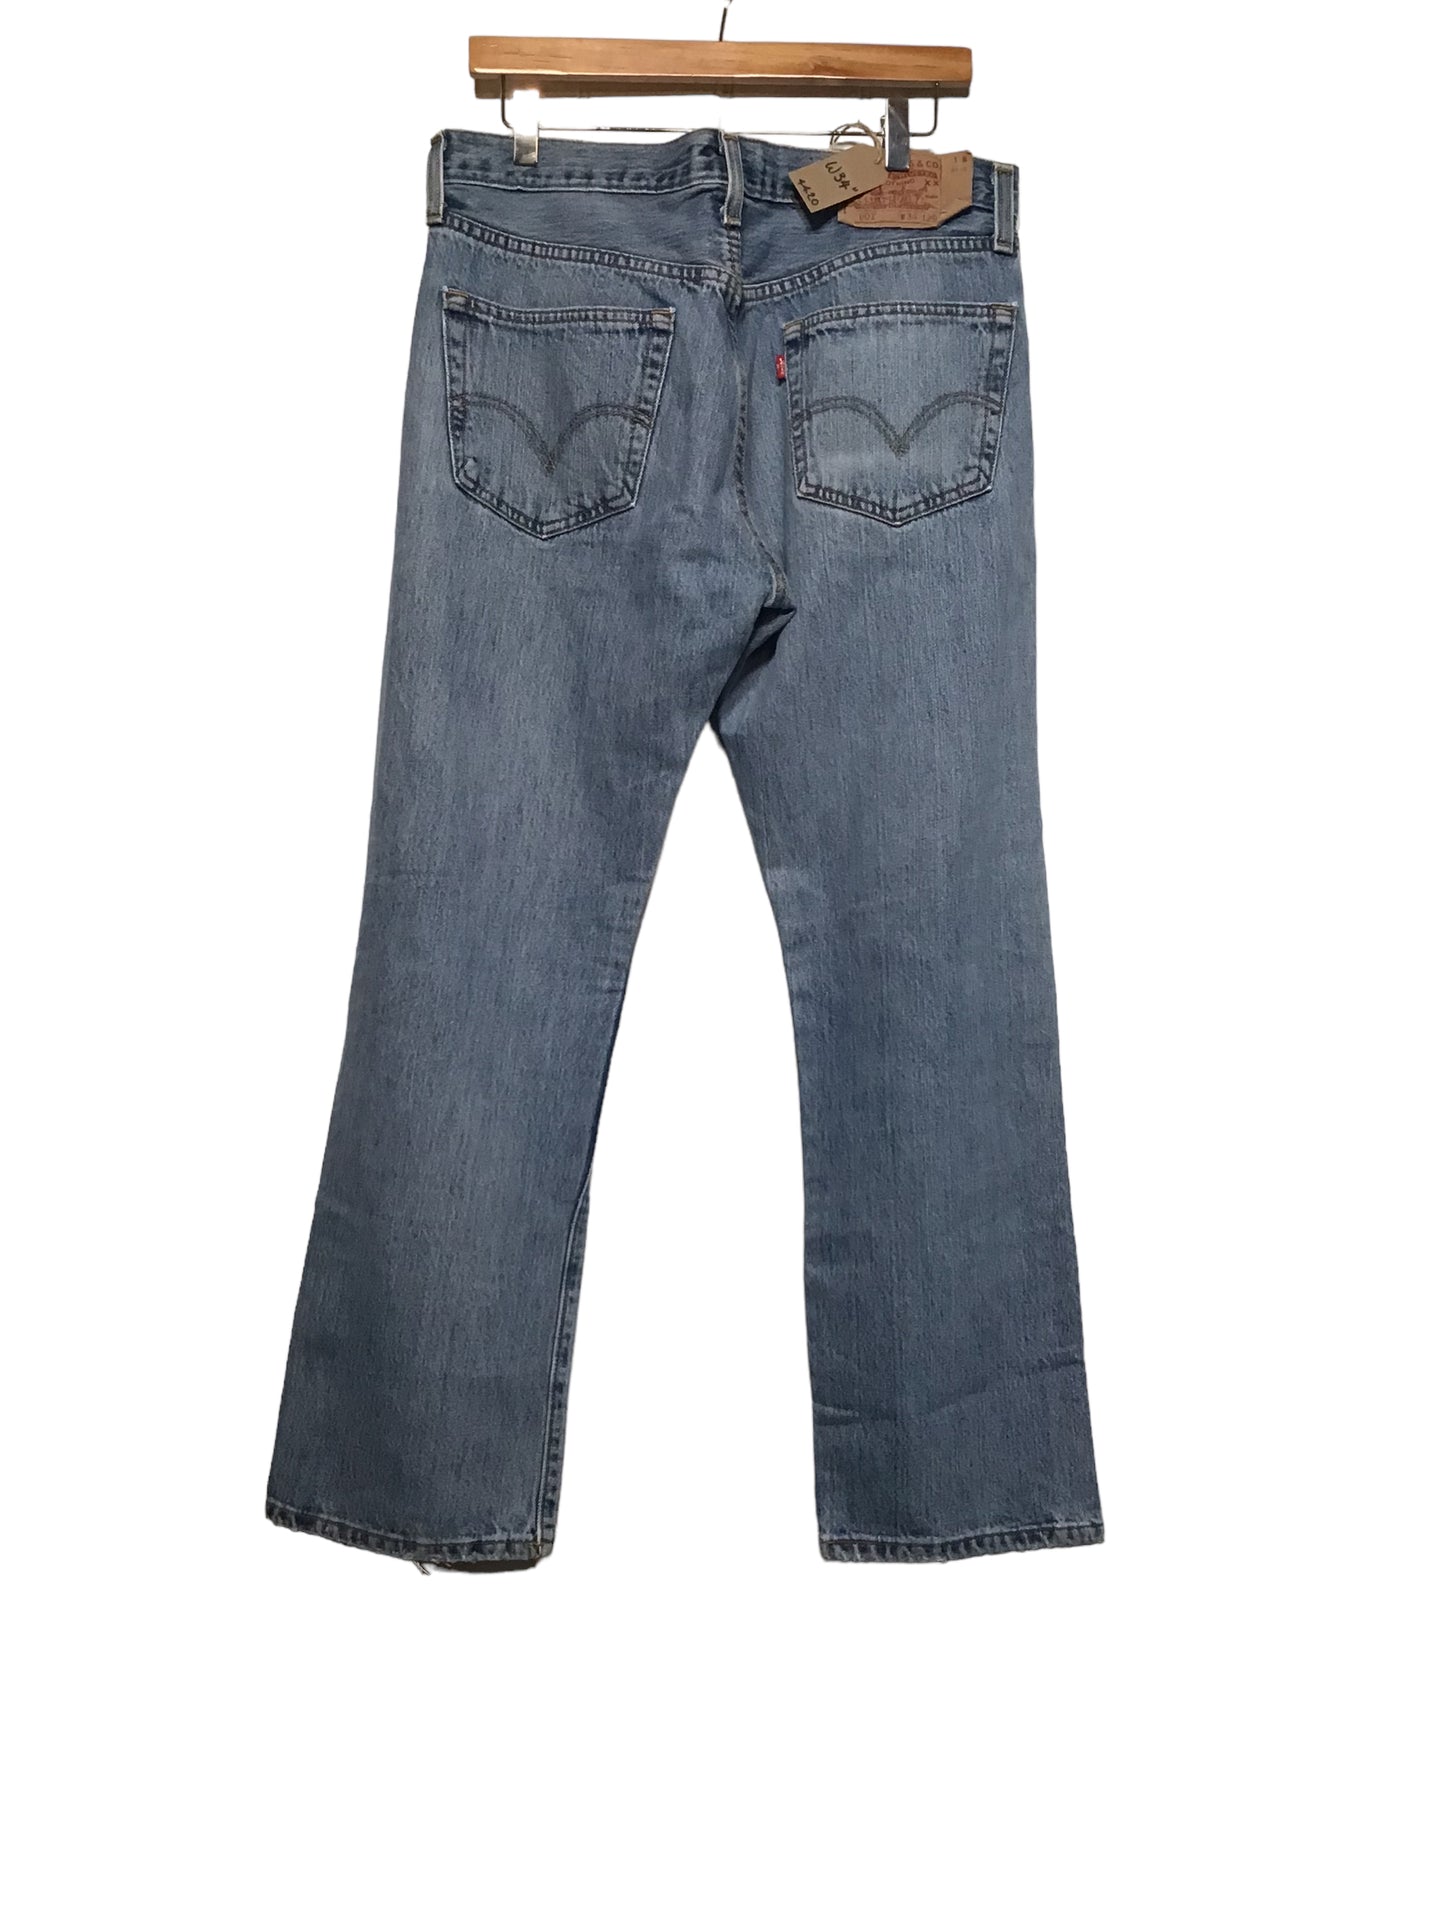 Levi 601 Jeans (34x29)